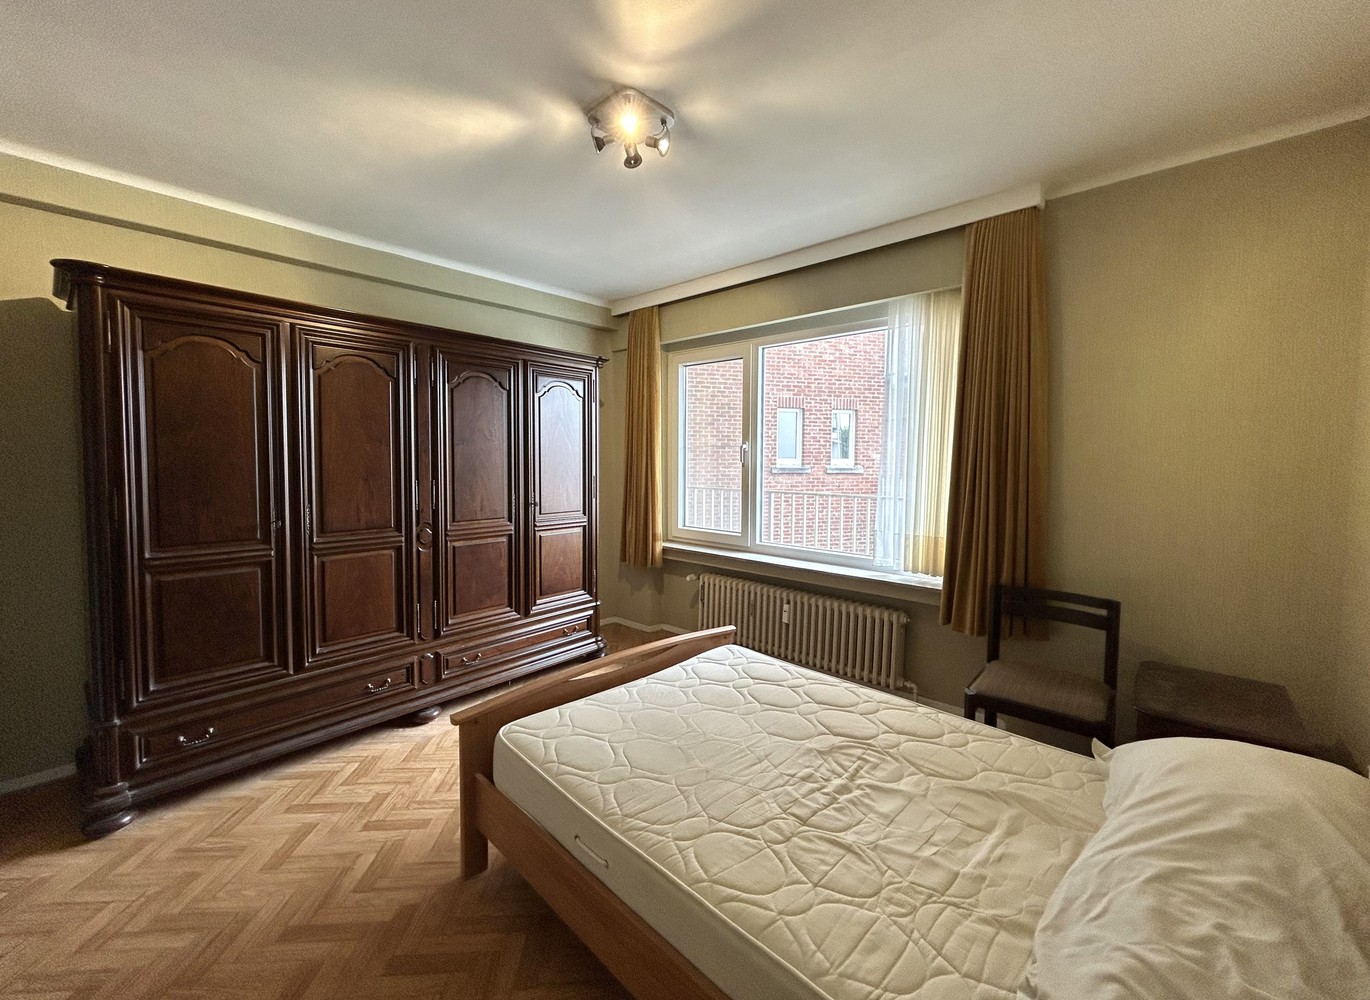 Ruim appartement met 2 slaapkamers in hartje Leuven! foto 11